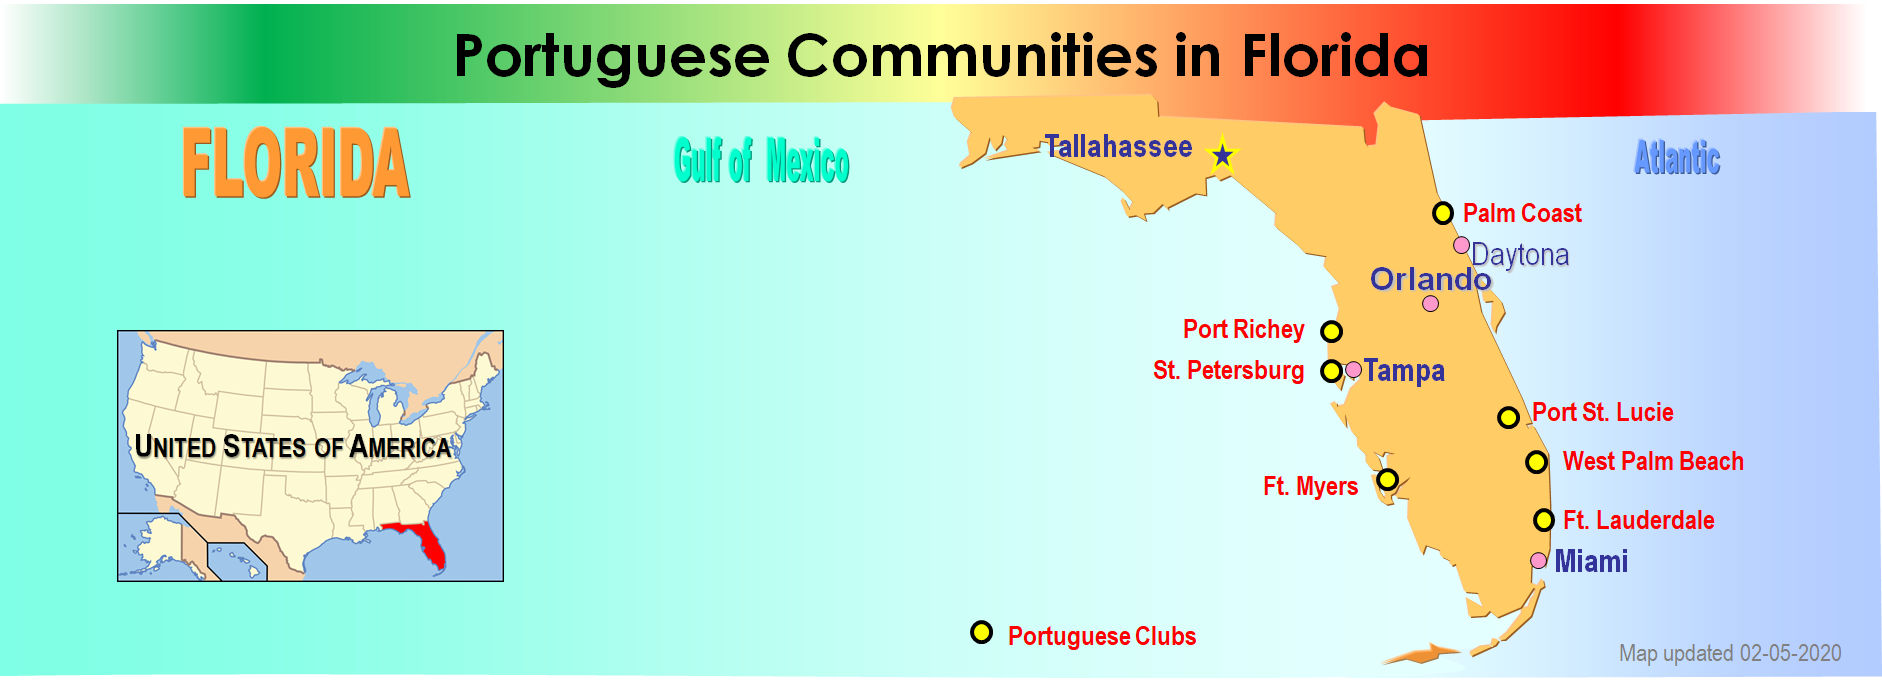 Portuguese Communities in Florida